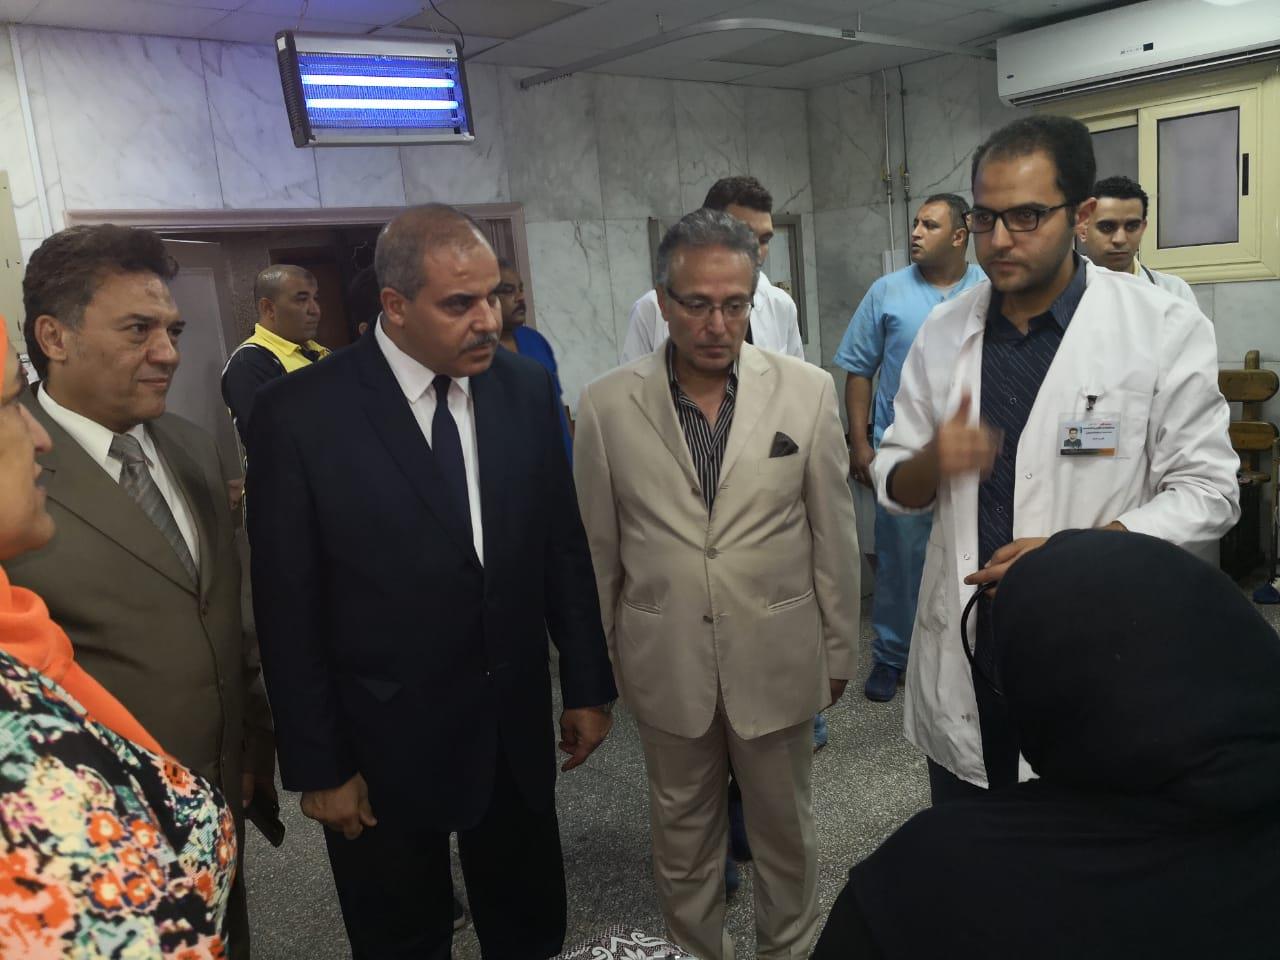 رئيس جامعة الأزهر يزور مستشفى سيد جلال